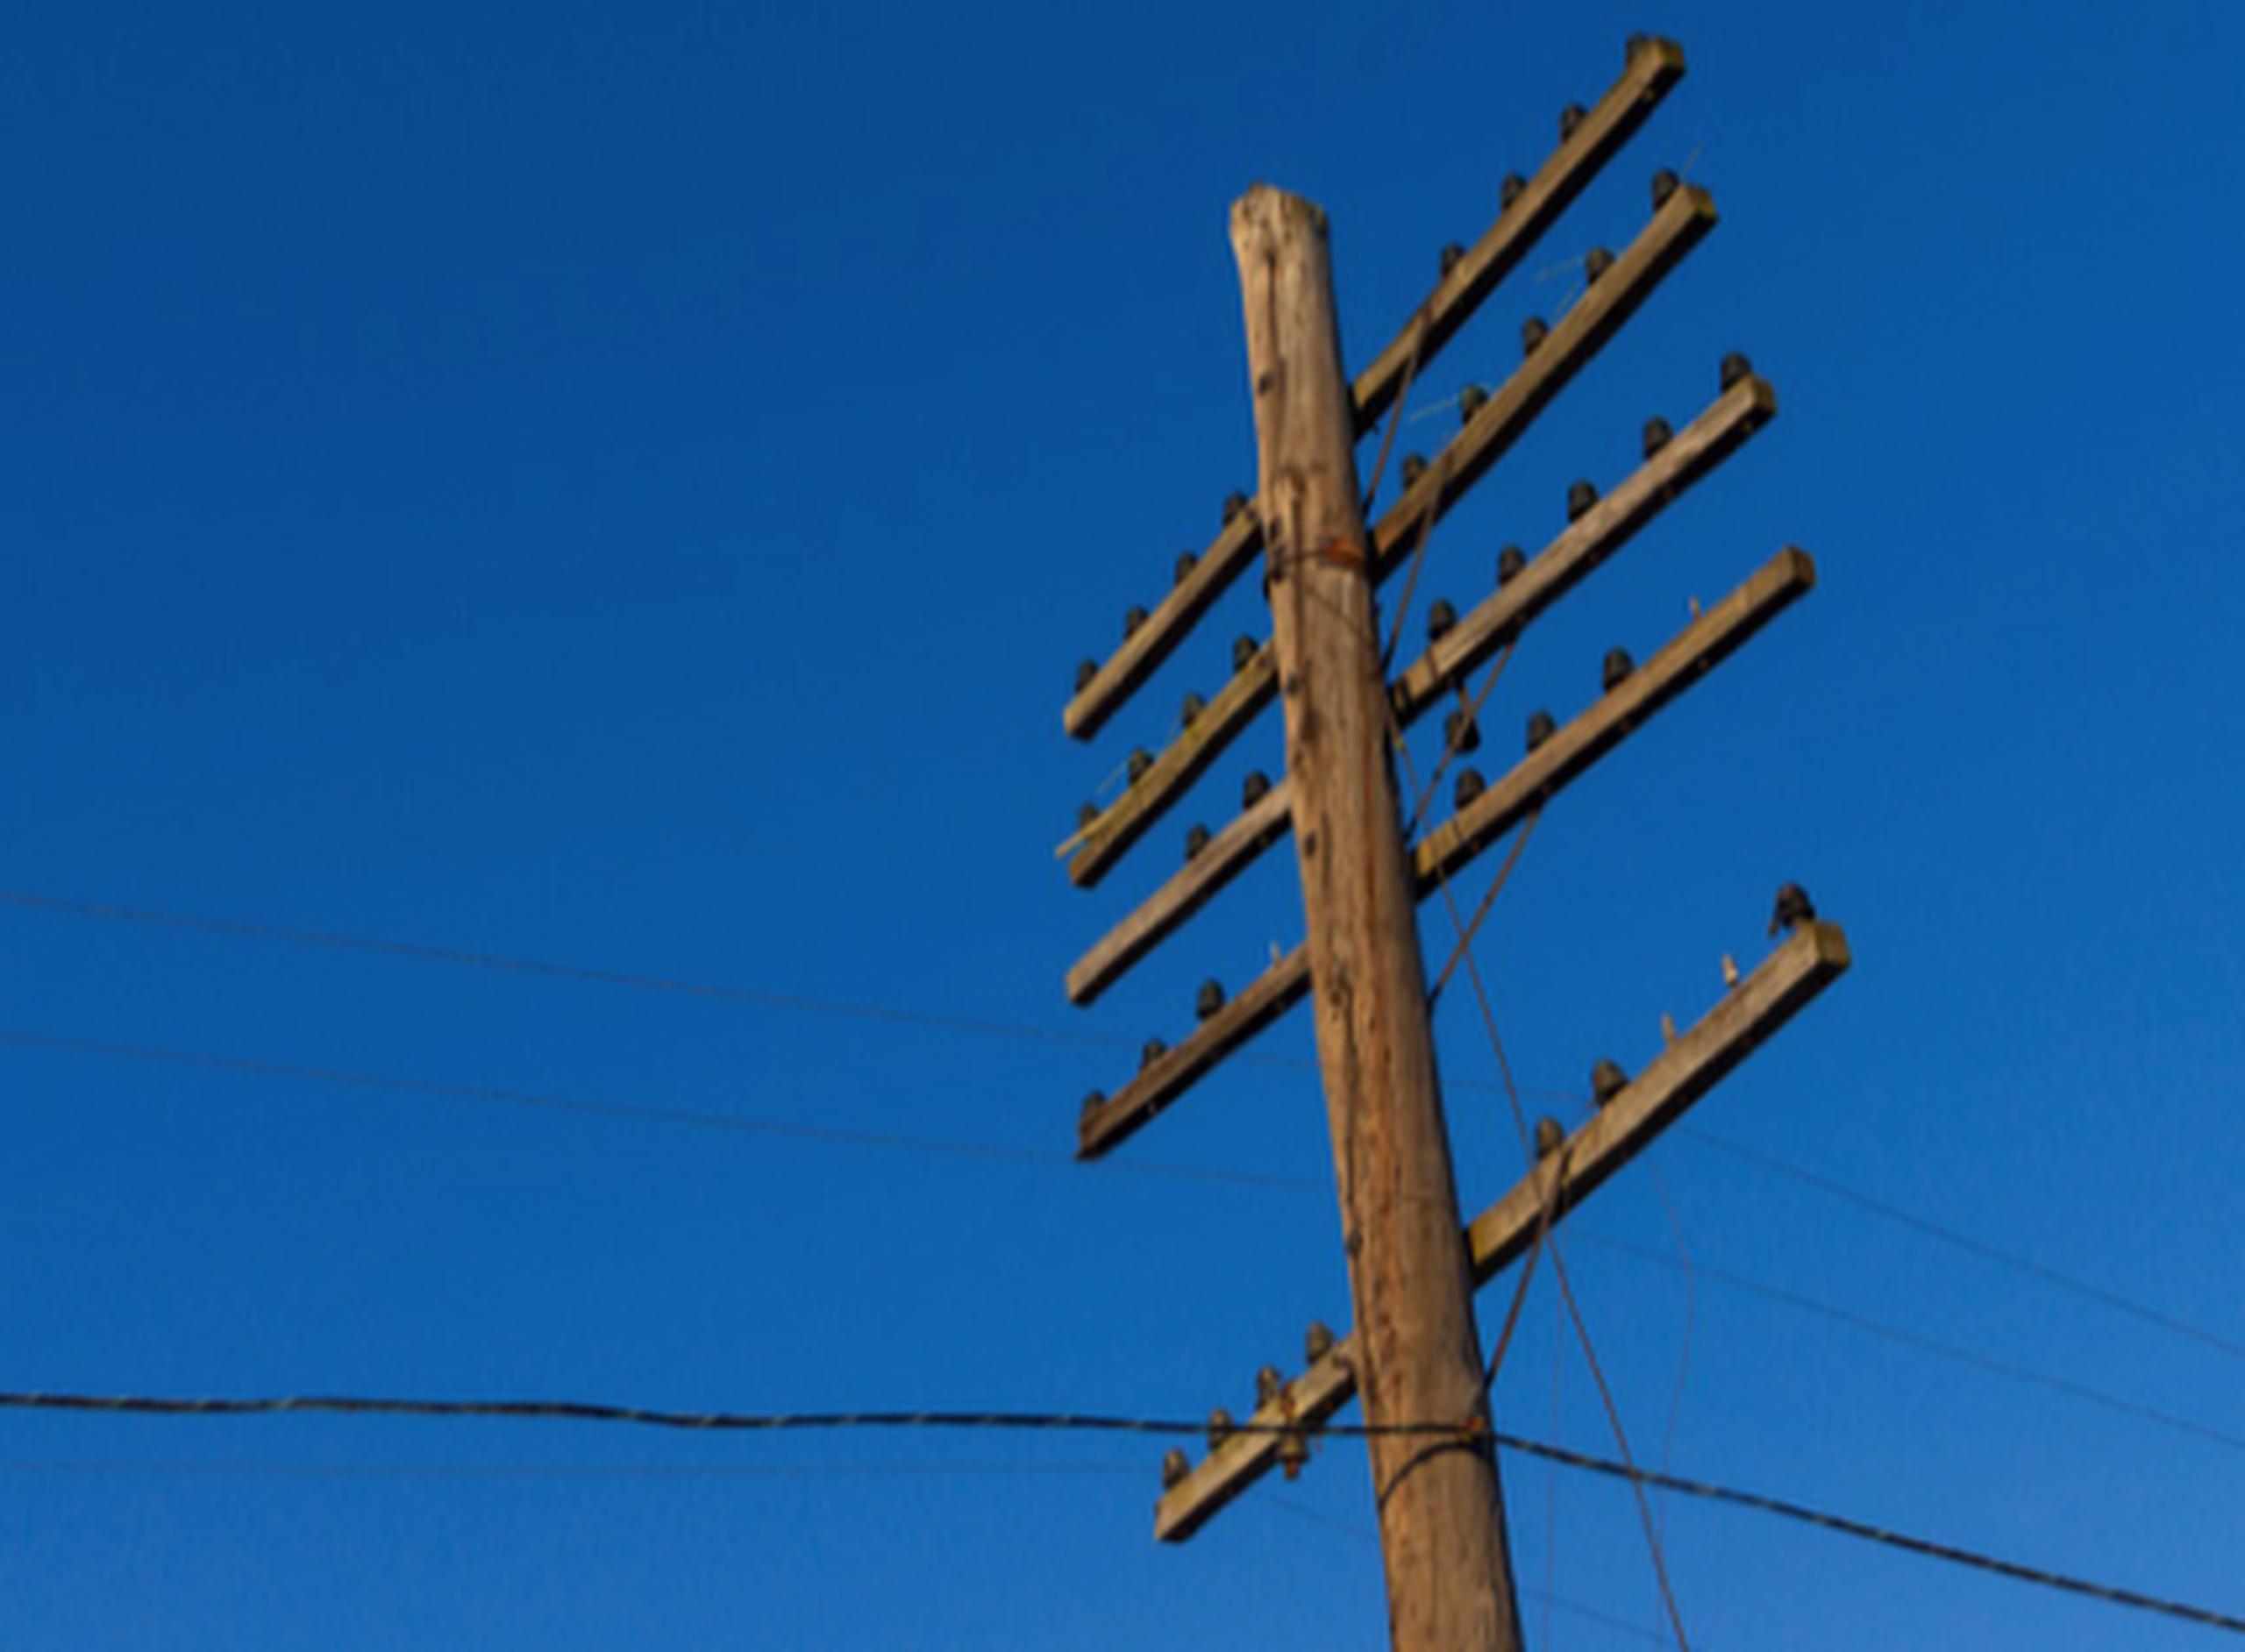 El poste de madera es la norma cuando se trata de servicios de distribución de electricidad telefonía, internet y televisión.